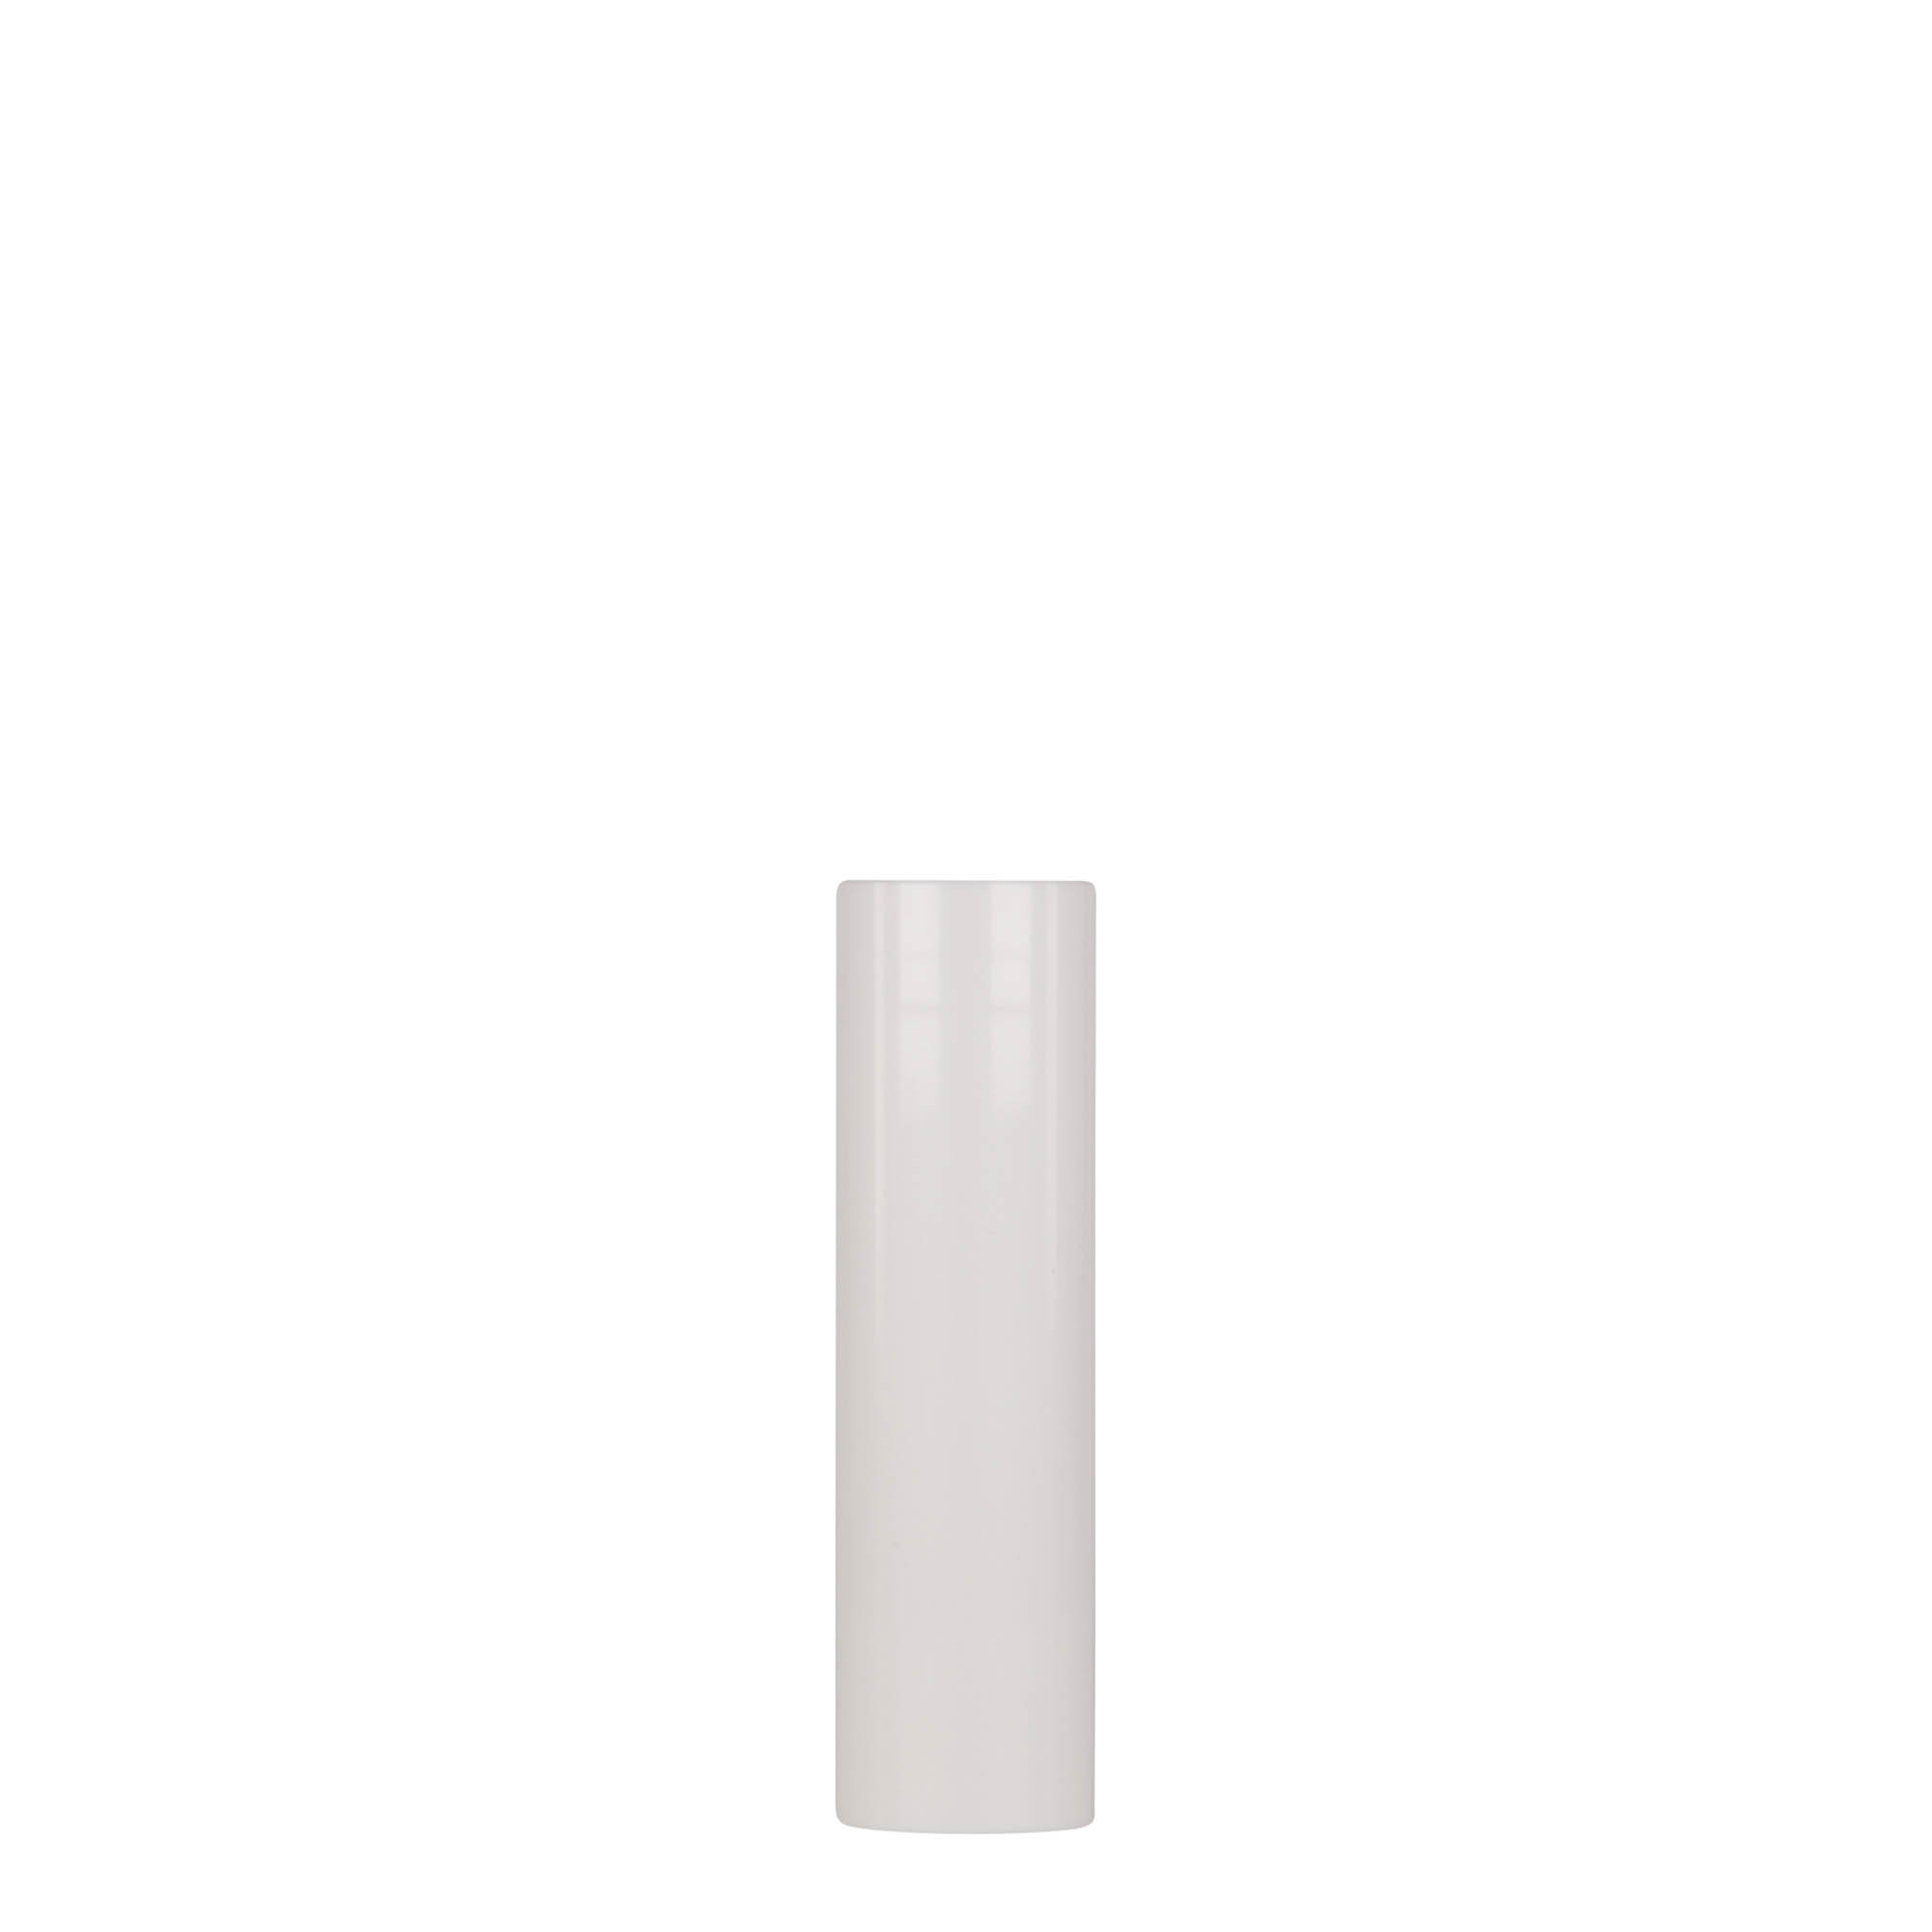 15 ml dozownik airless 'Nano', tworzywo sztuczne PP, kolor biały